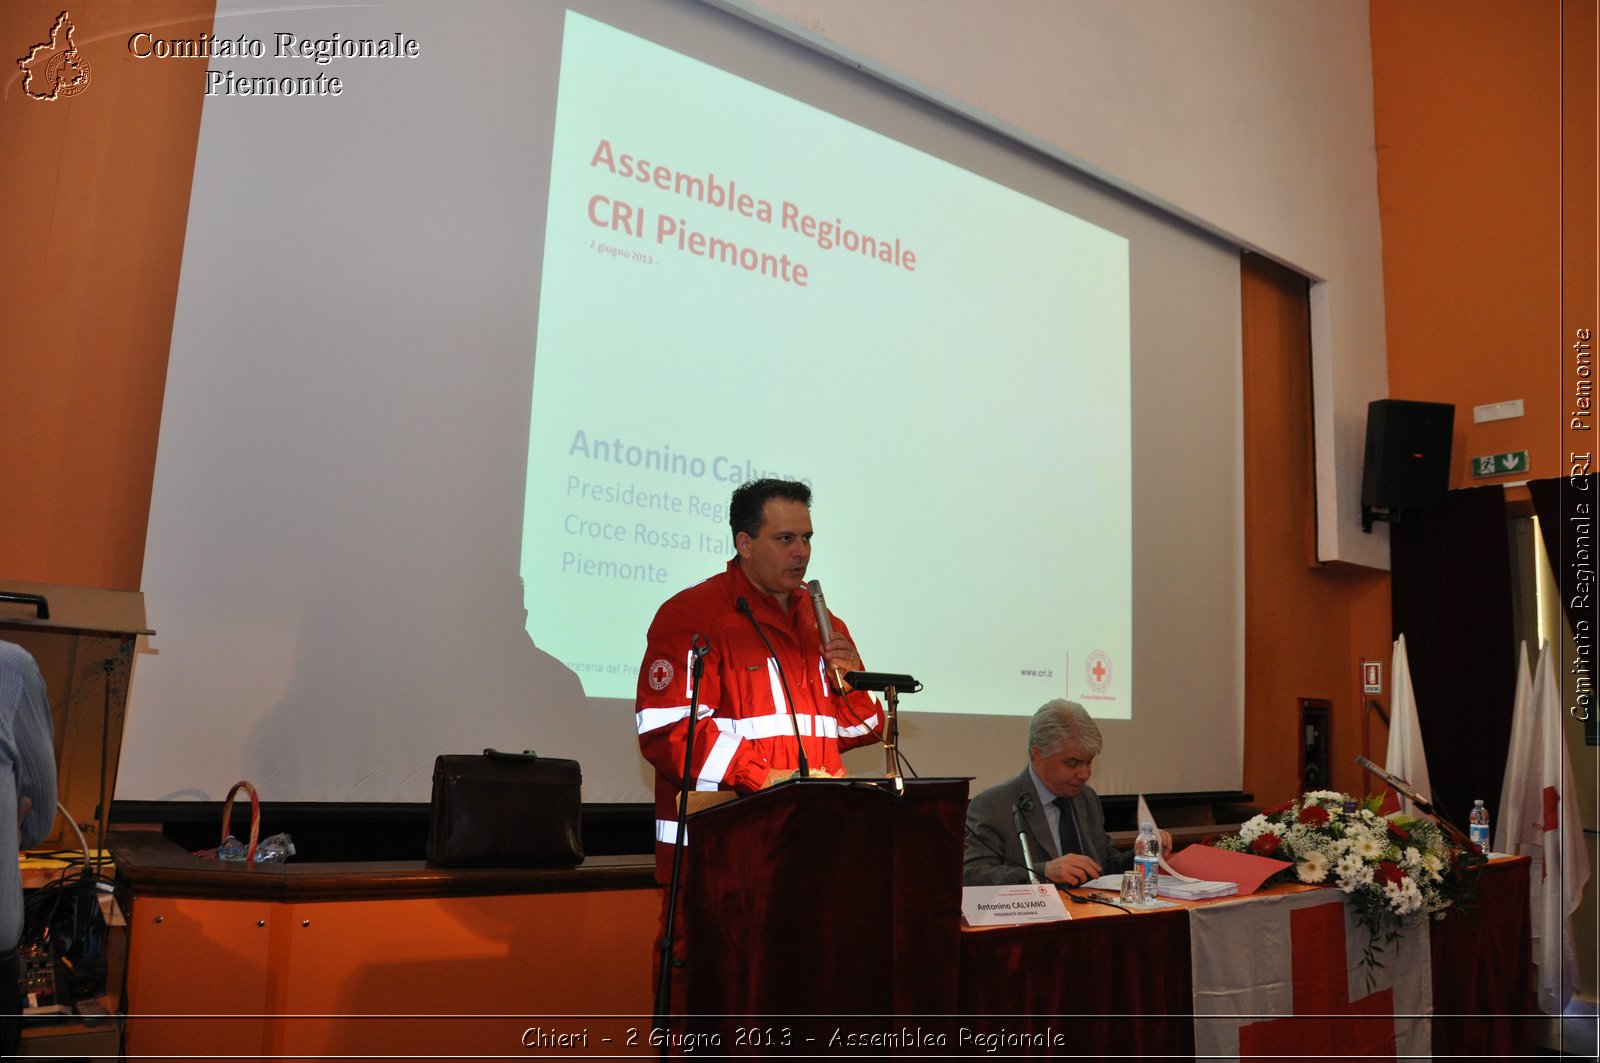 Chieri - 2 Giugno 2013 - Assemblea Regionale - Croce Rossa Italiana - Comitato Regionale del Piemonte